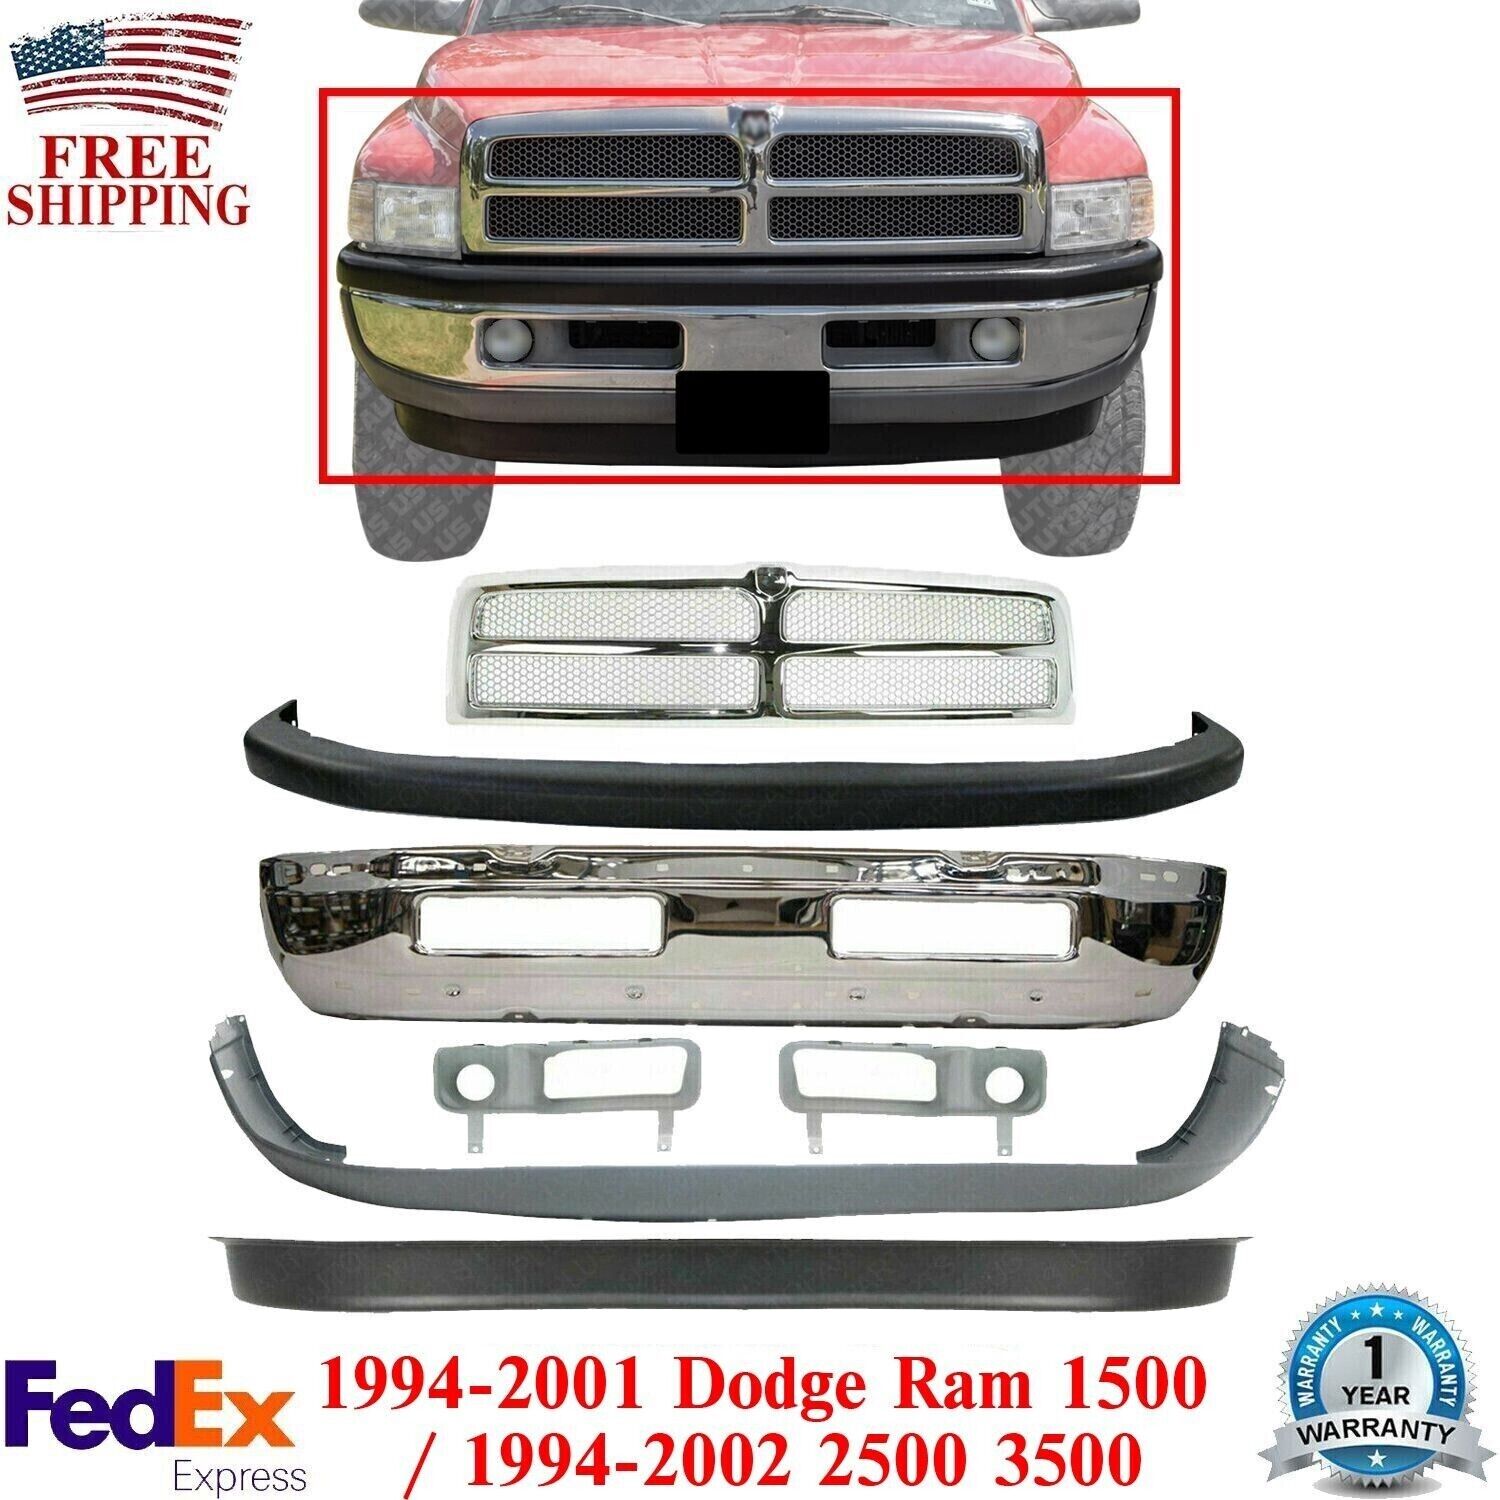 Front Bumper Chrome Kit + Grille + Fog Lamp Moldings For 1994-01 Dodge Ram 1500